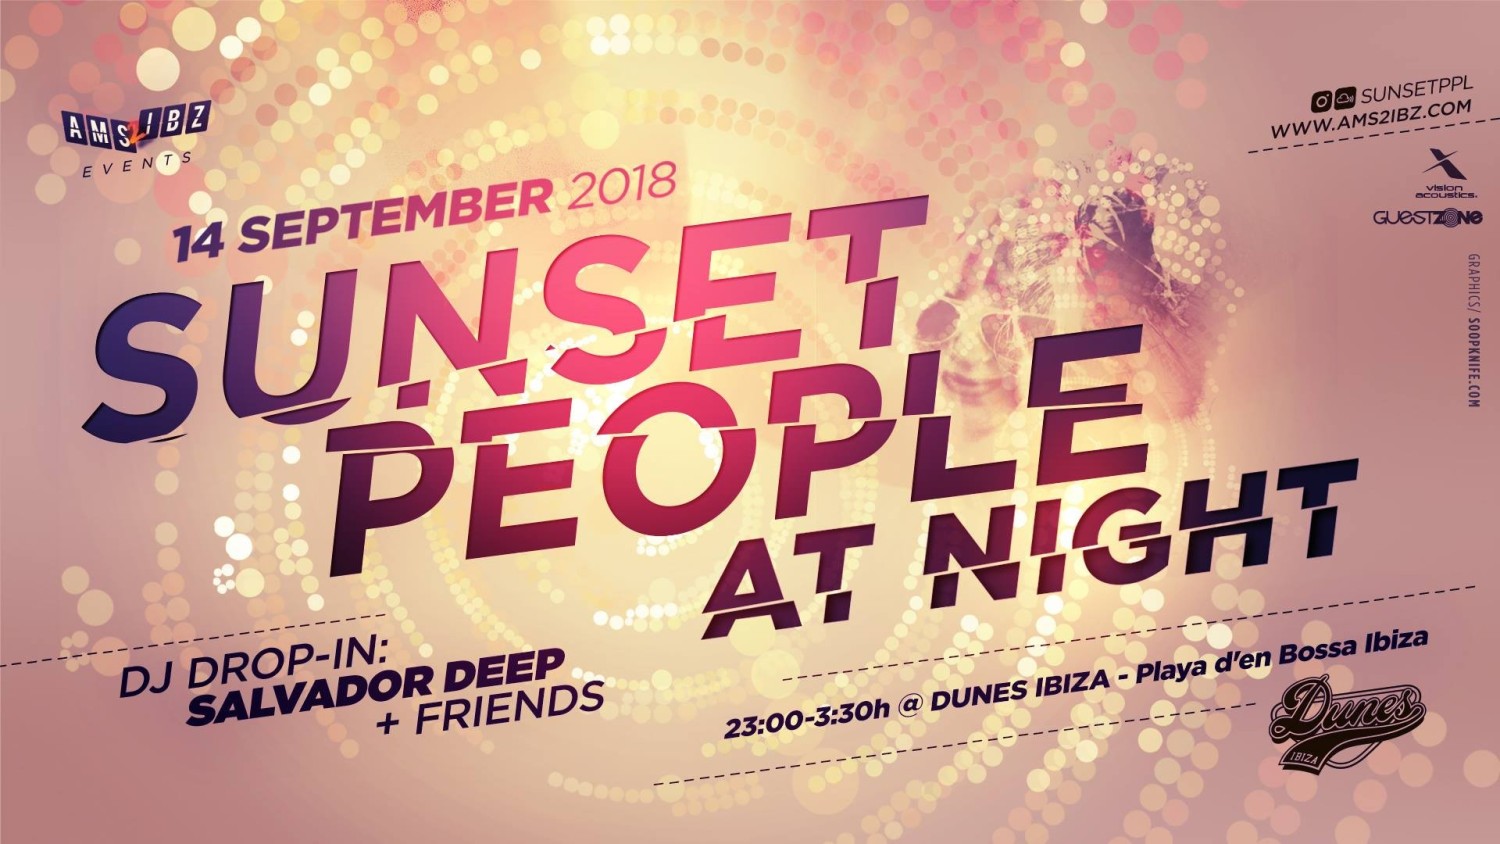 Party nieuws: Dubbel genieten van Sunset People op Ibiza!